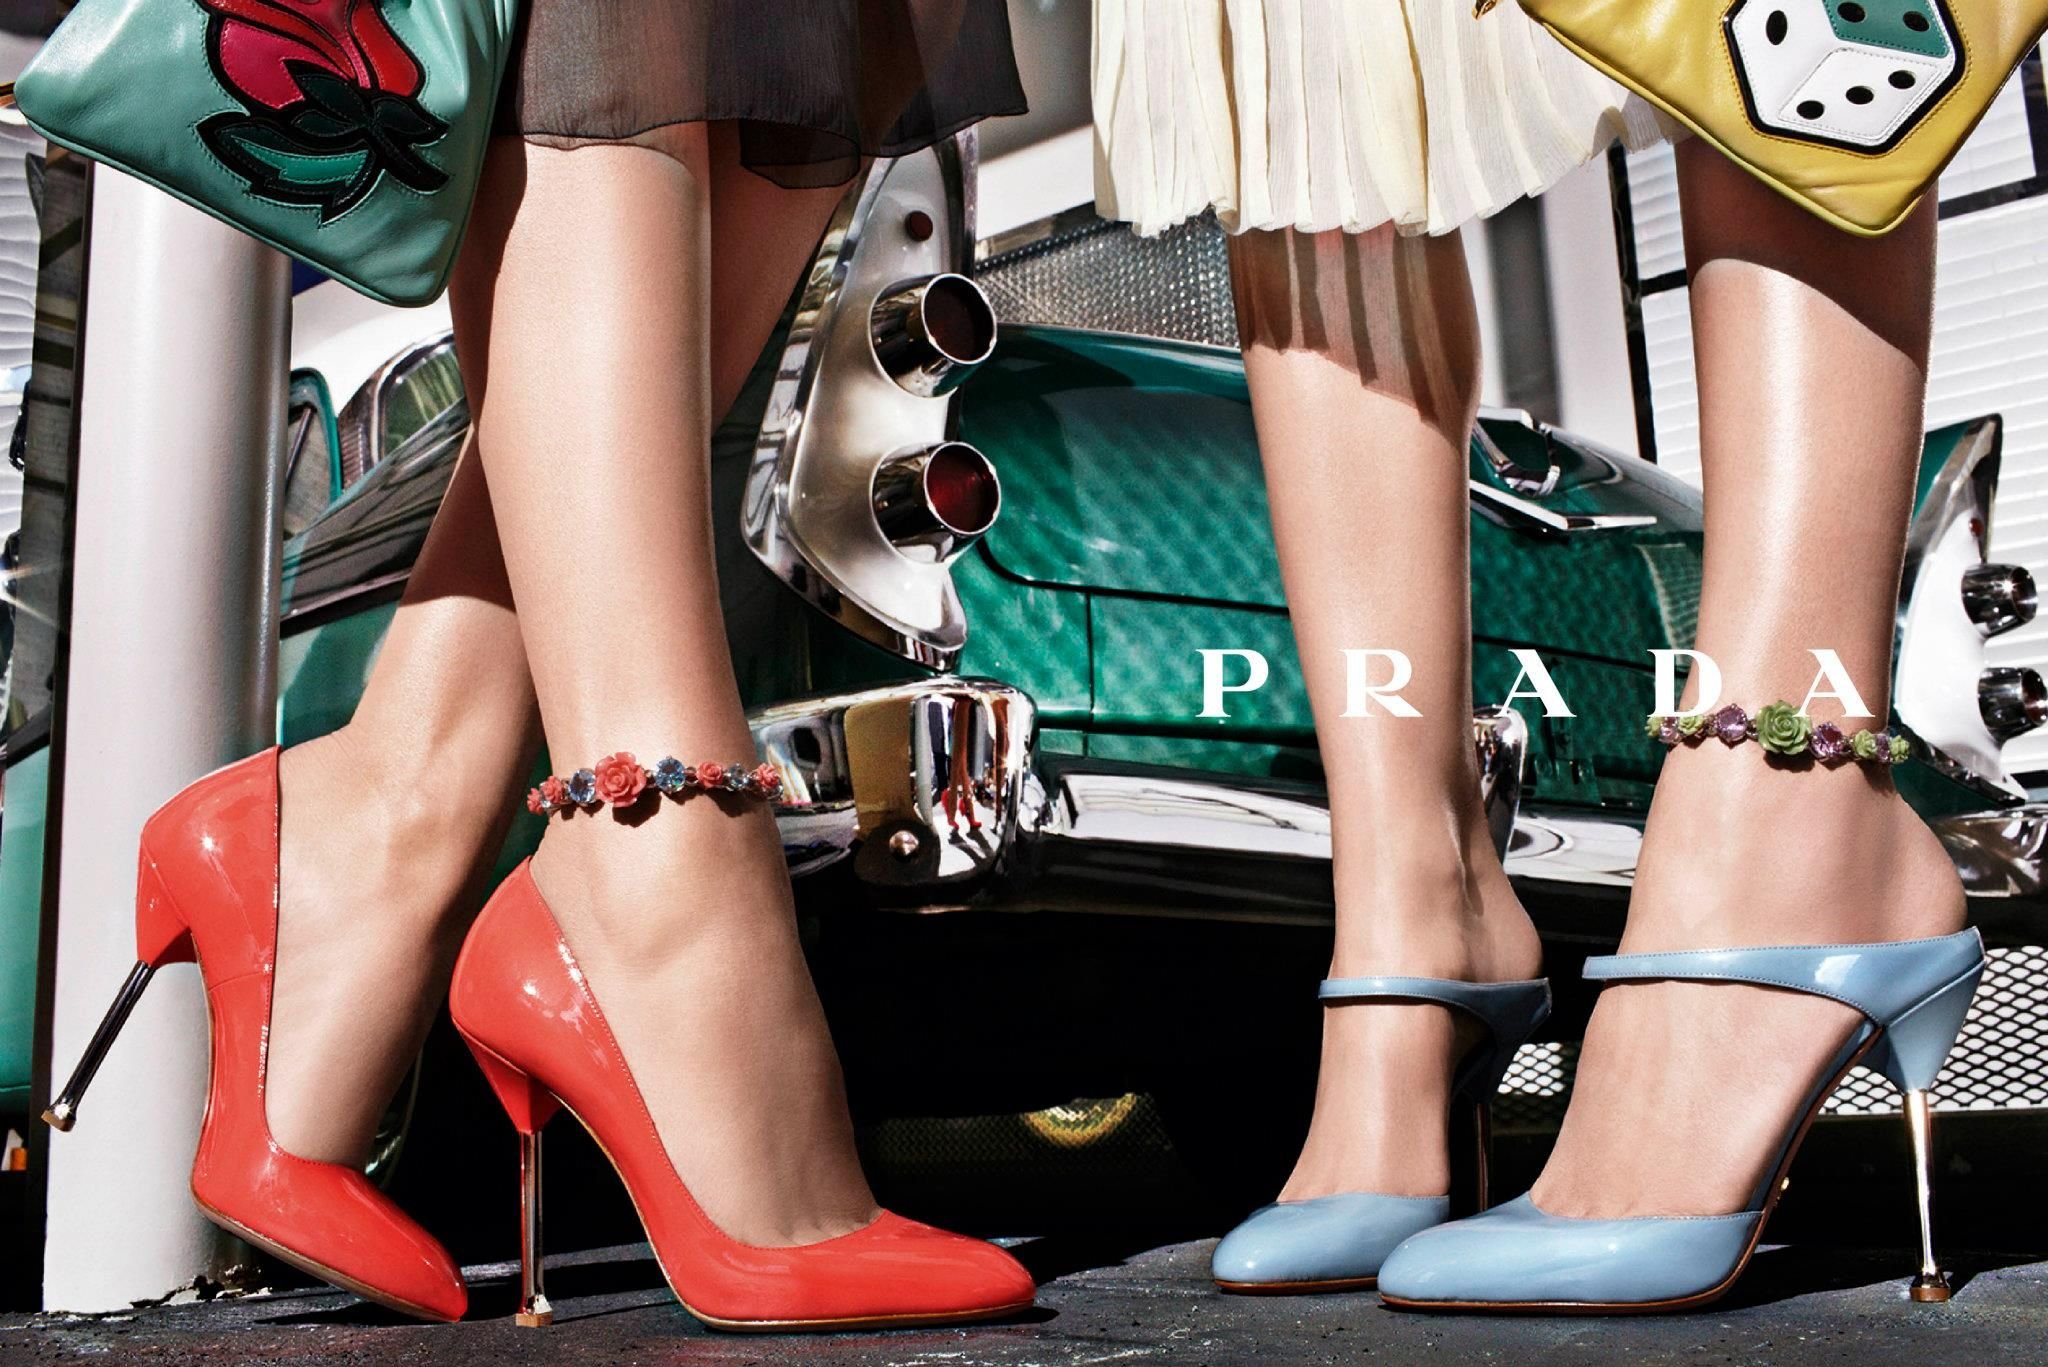 Реклама туфель. Обувь Prada campaign. Туфли в ретро стиле женские. Туфли в стиле 50-х годов. Босоножки в стиле ретро.